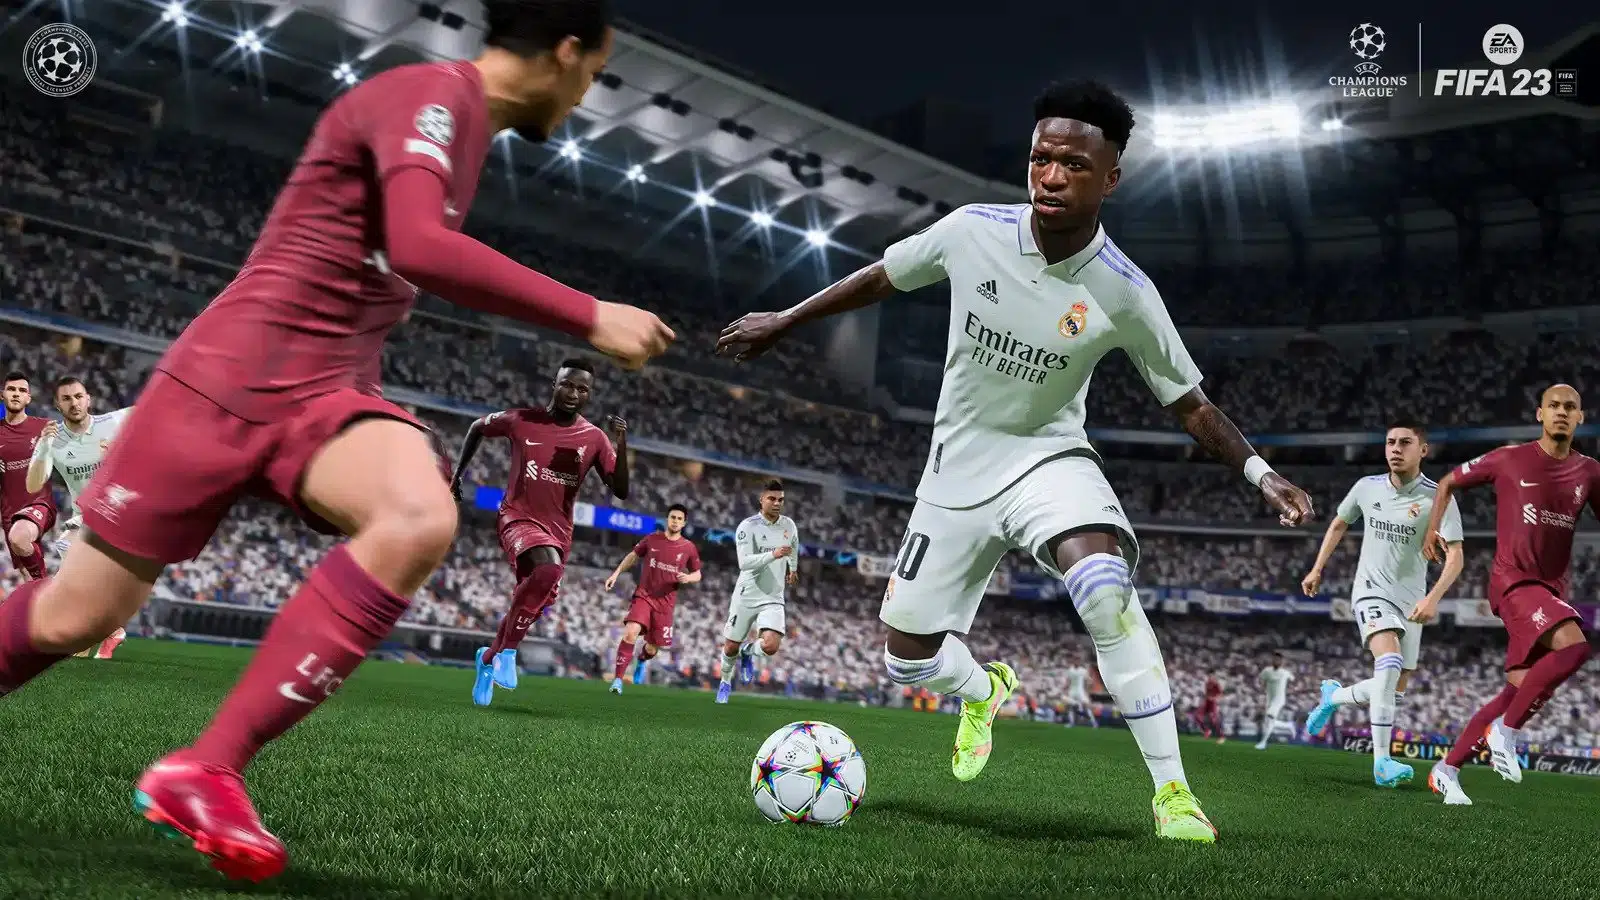 FIFA 23 update 1.02